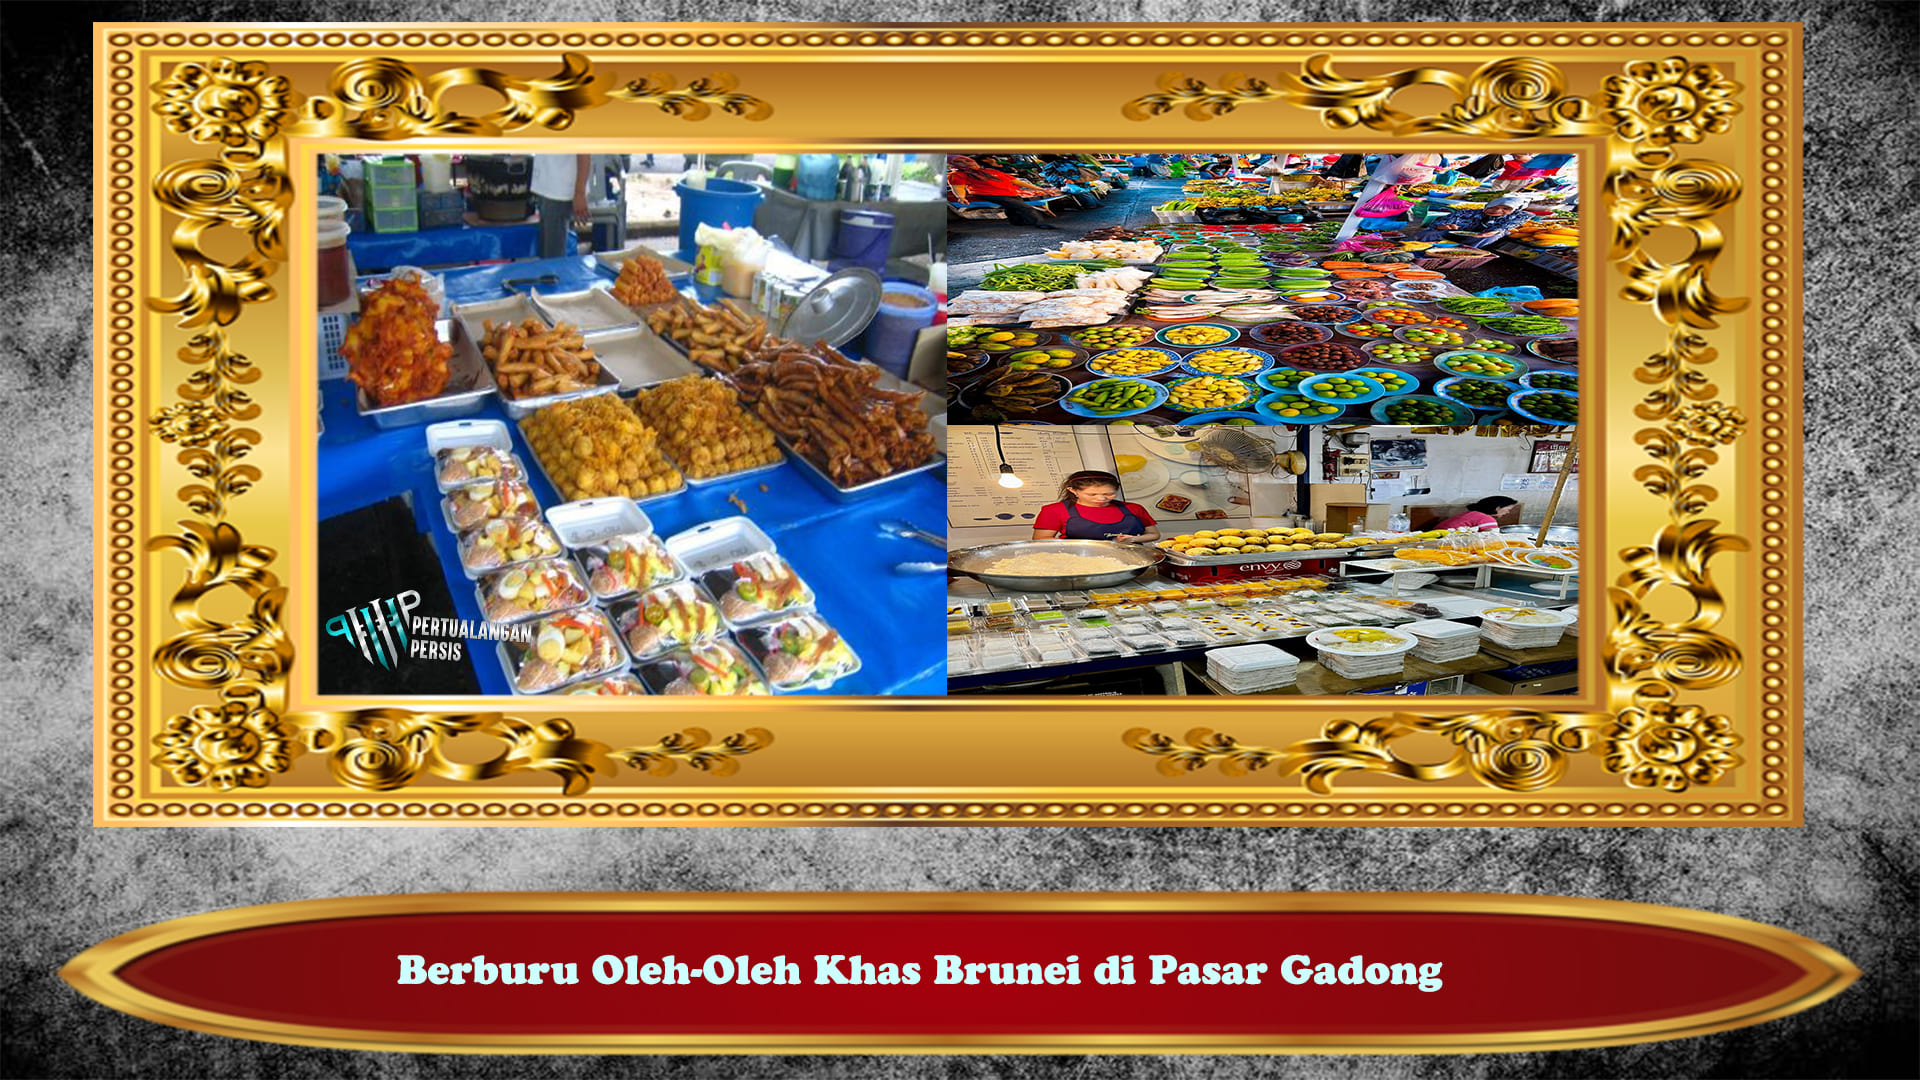 Berburu Oleh-Oleh Khas Brunei di Pasar Gadong